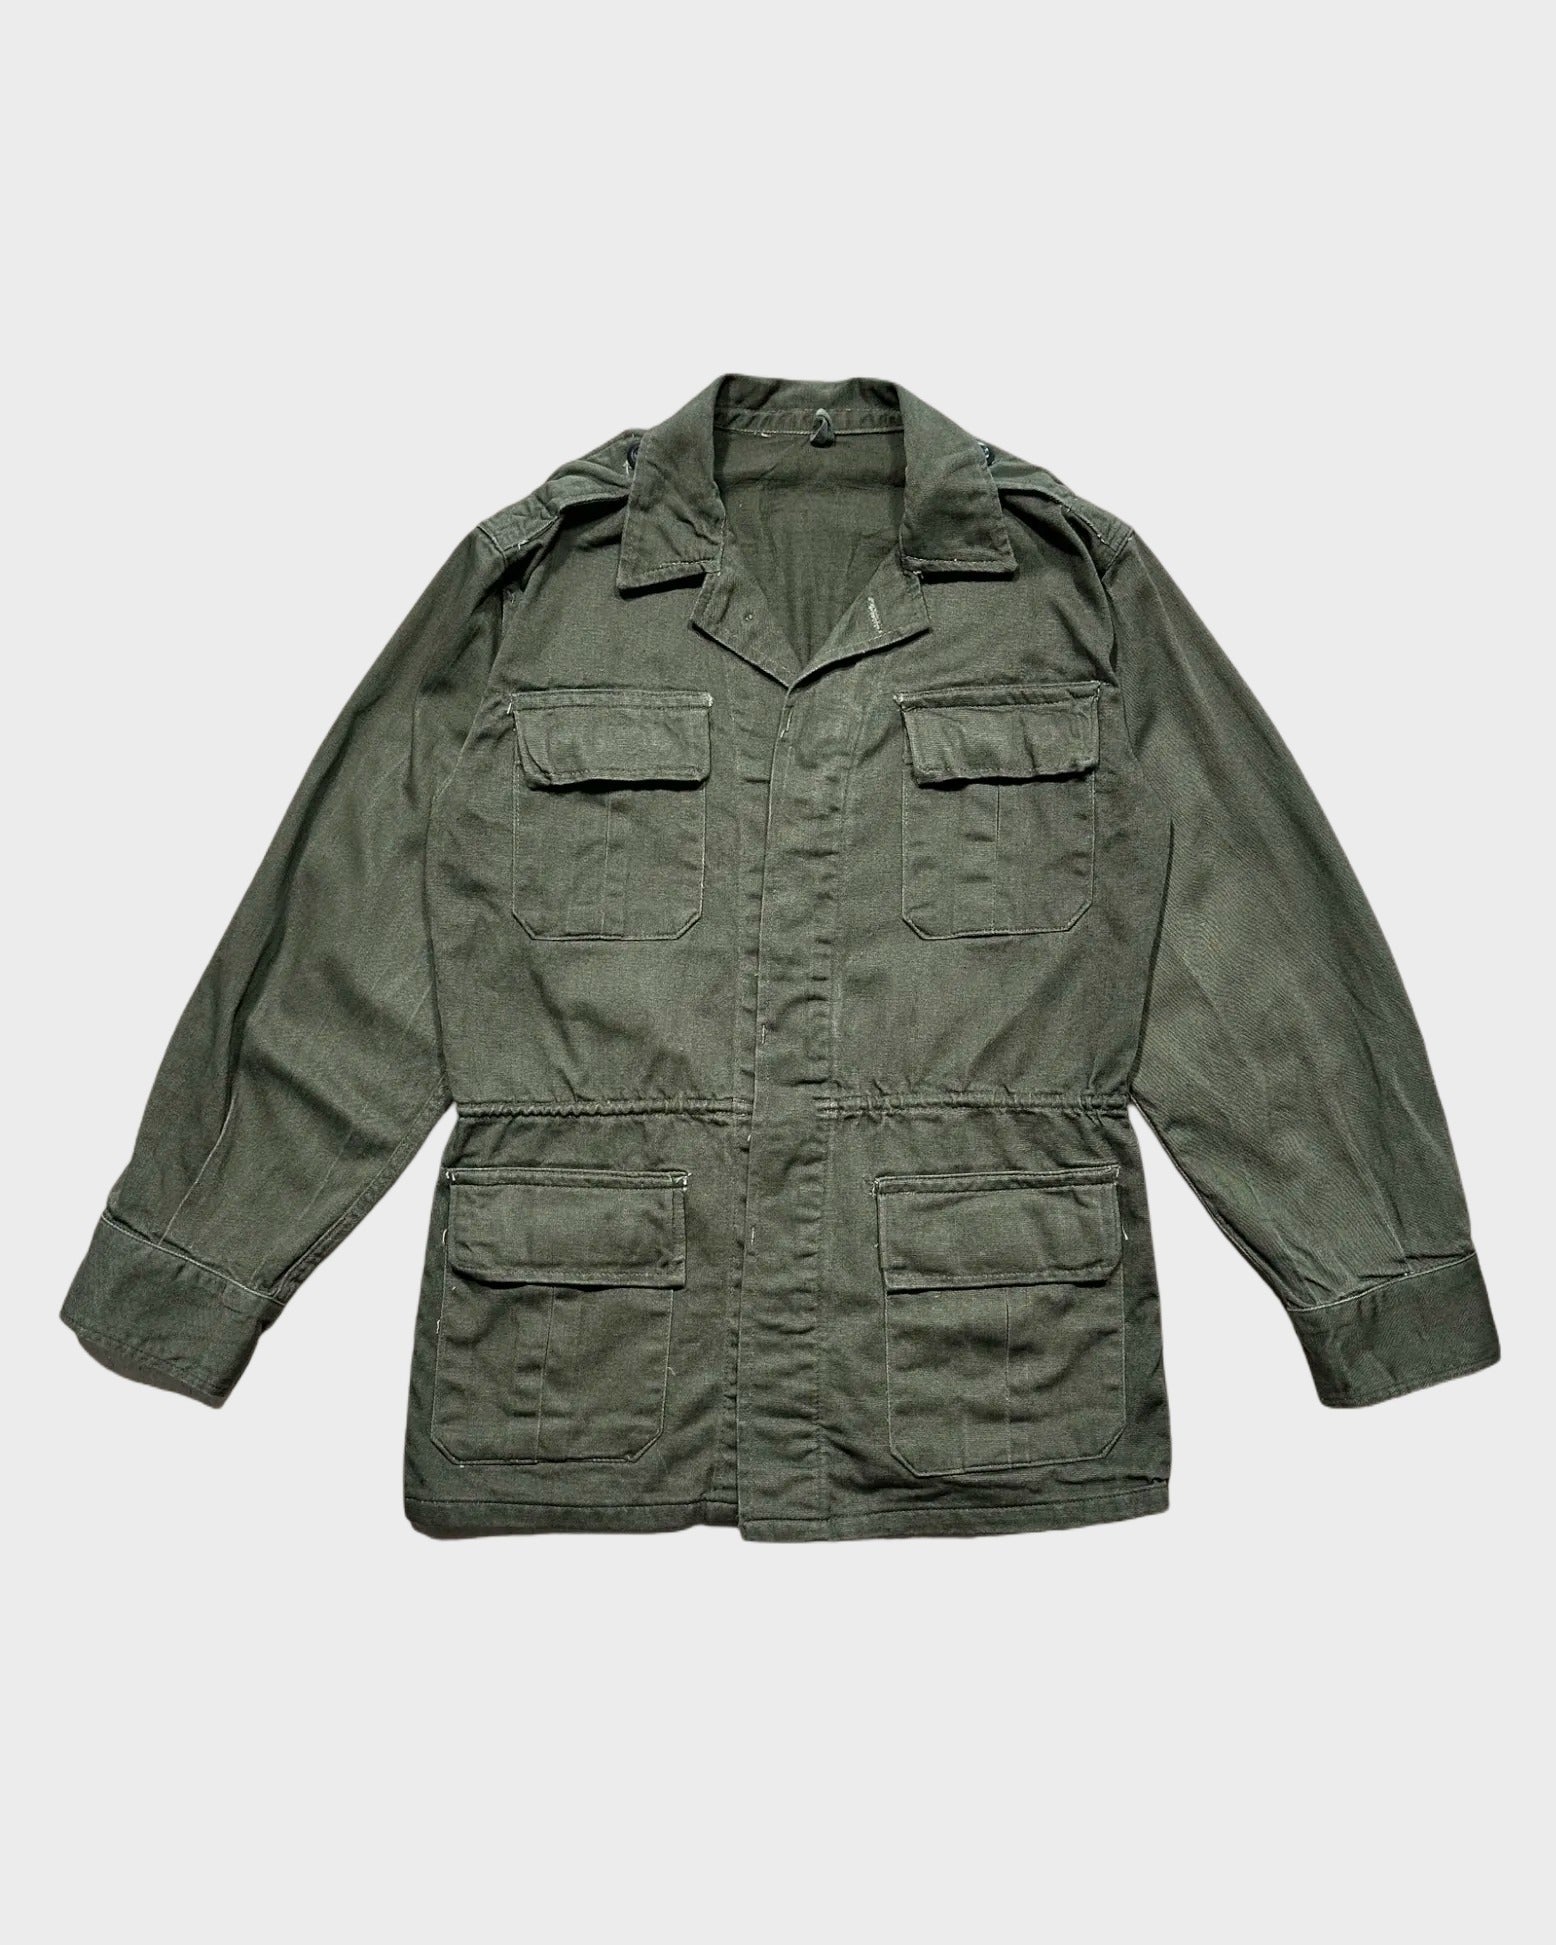 Greek army field jacket